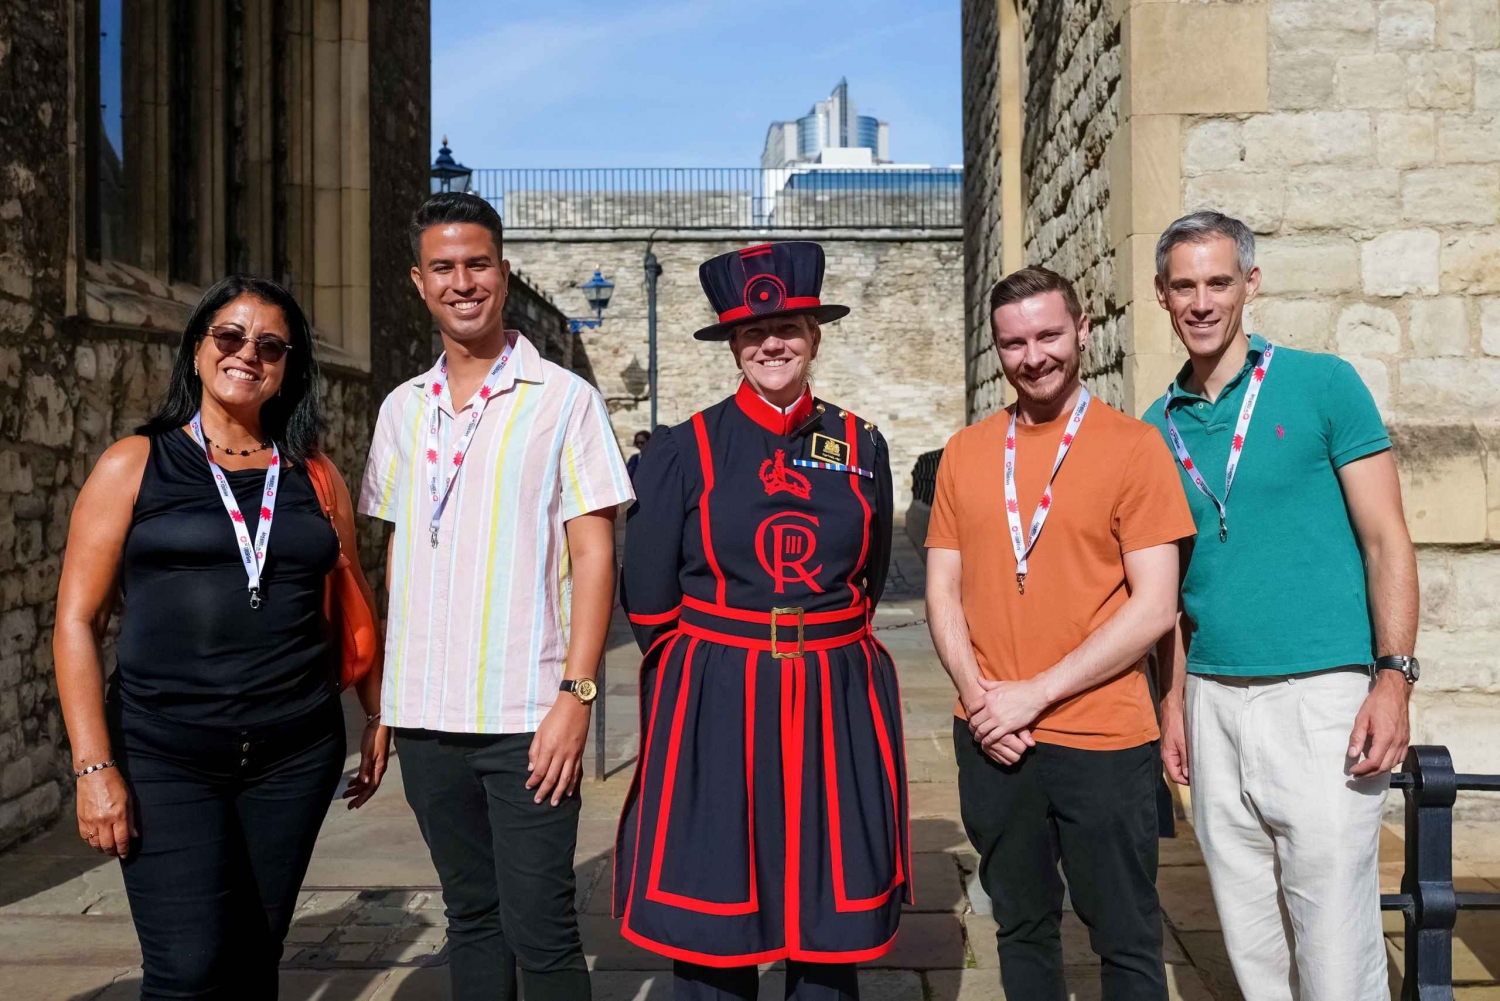 London: Rundtur i Tower of London med kronjuveler og Beefeaters